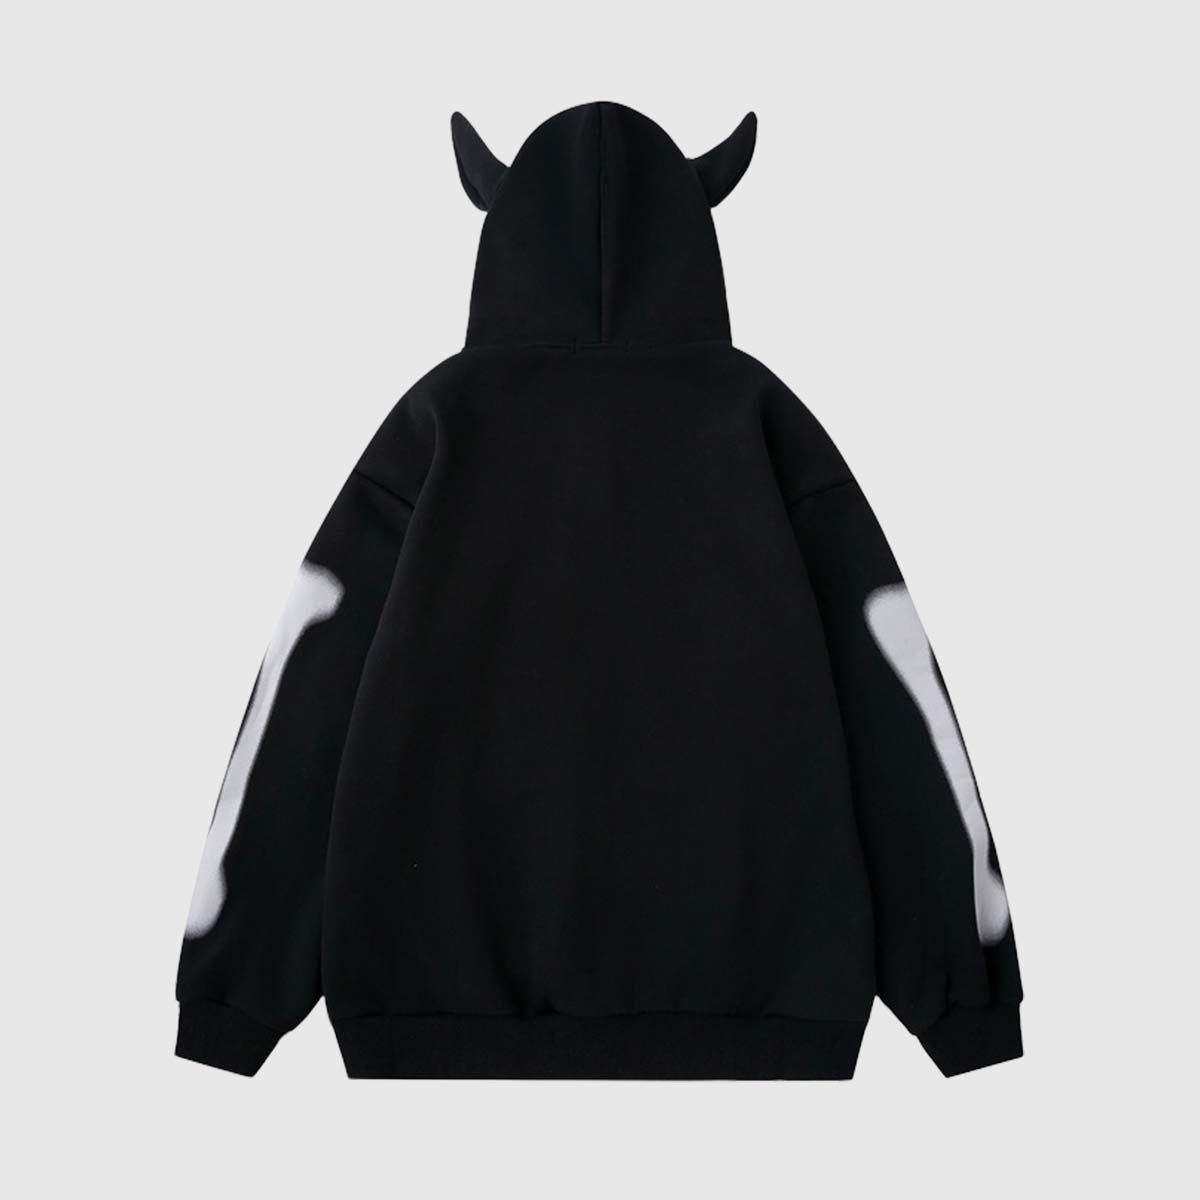 Back view of black unisex skeleton print hoodie with ears